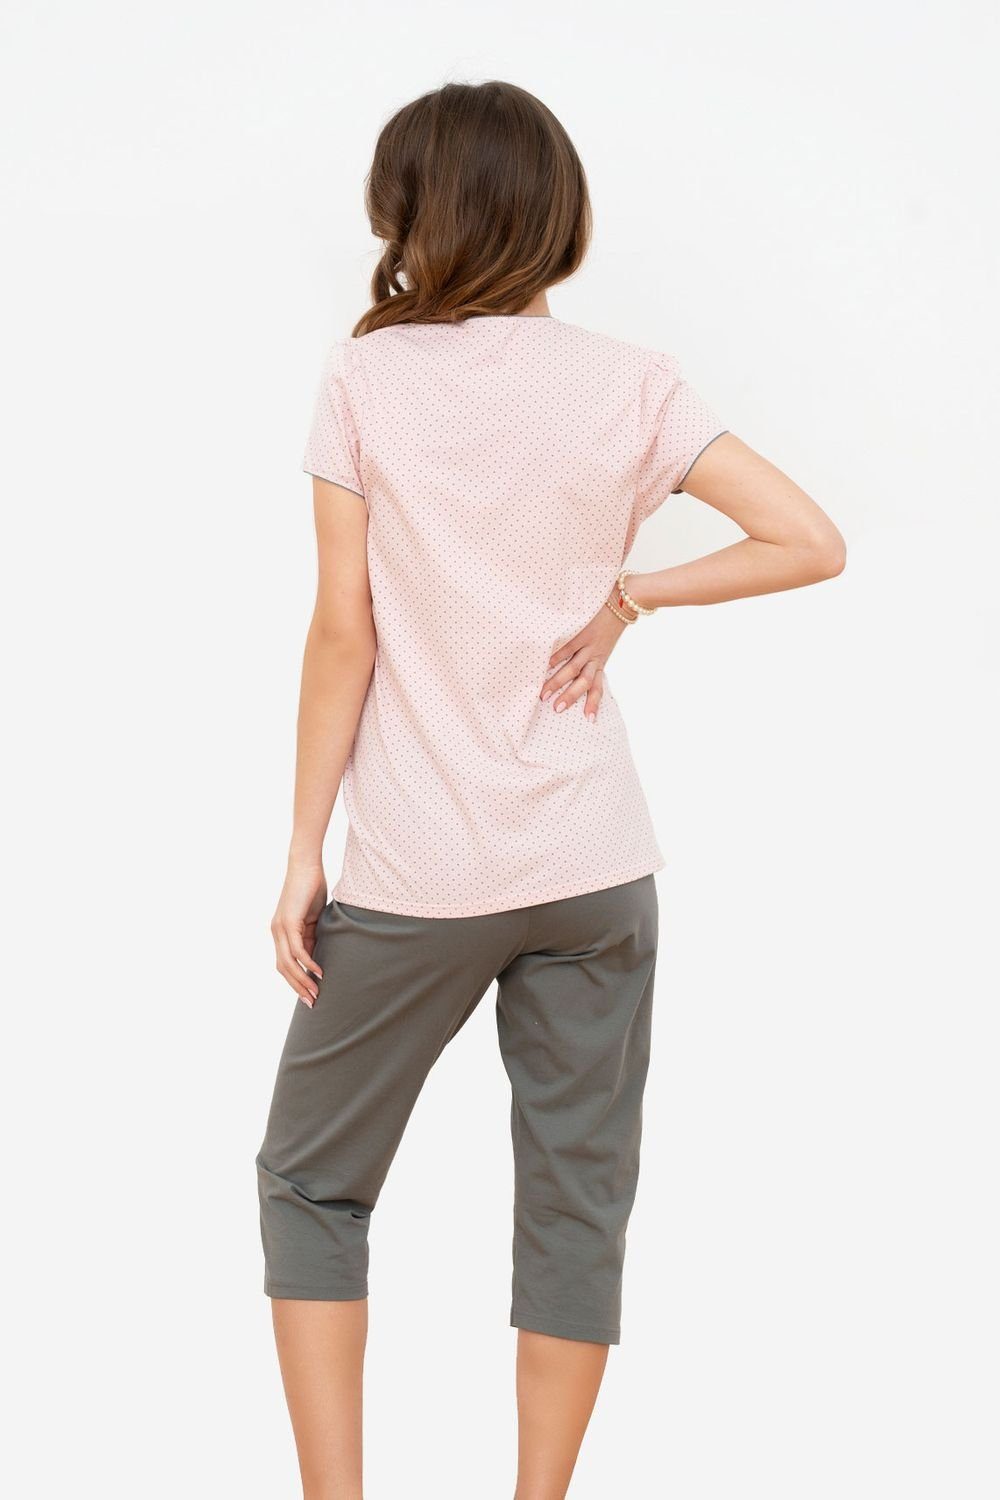 cleverer Stillfunktion 3/4tel ITALIAN mit Aprikose Hose, FASHION Schlafanzug